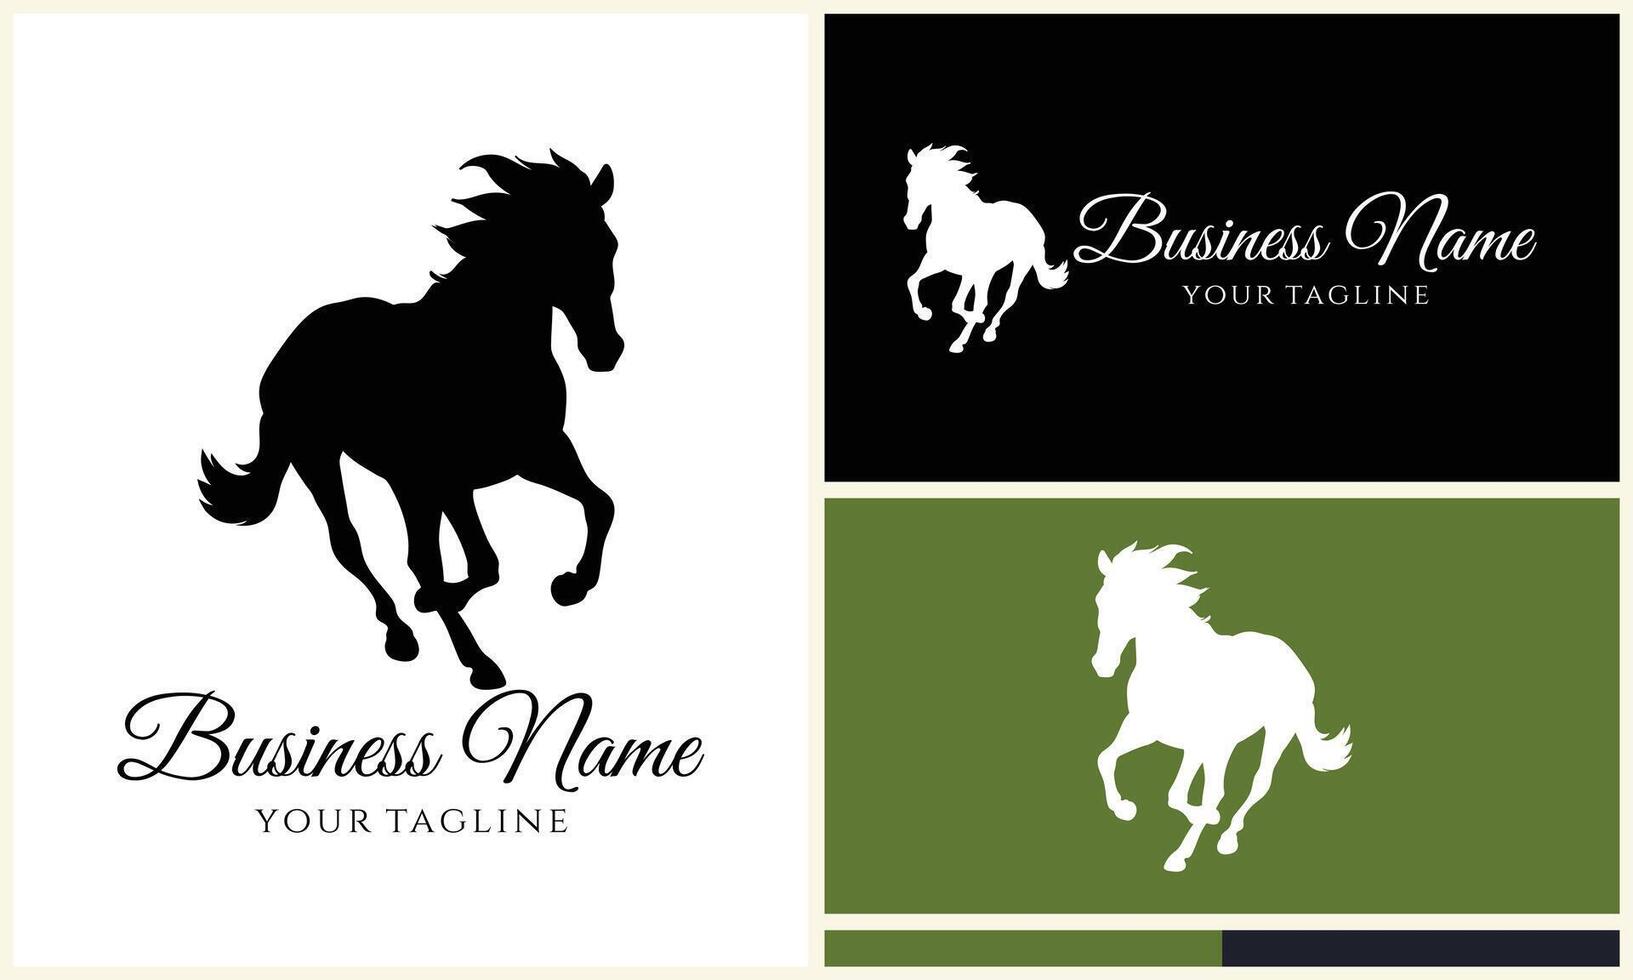 silhouette vector horse logo template